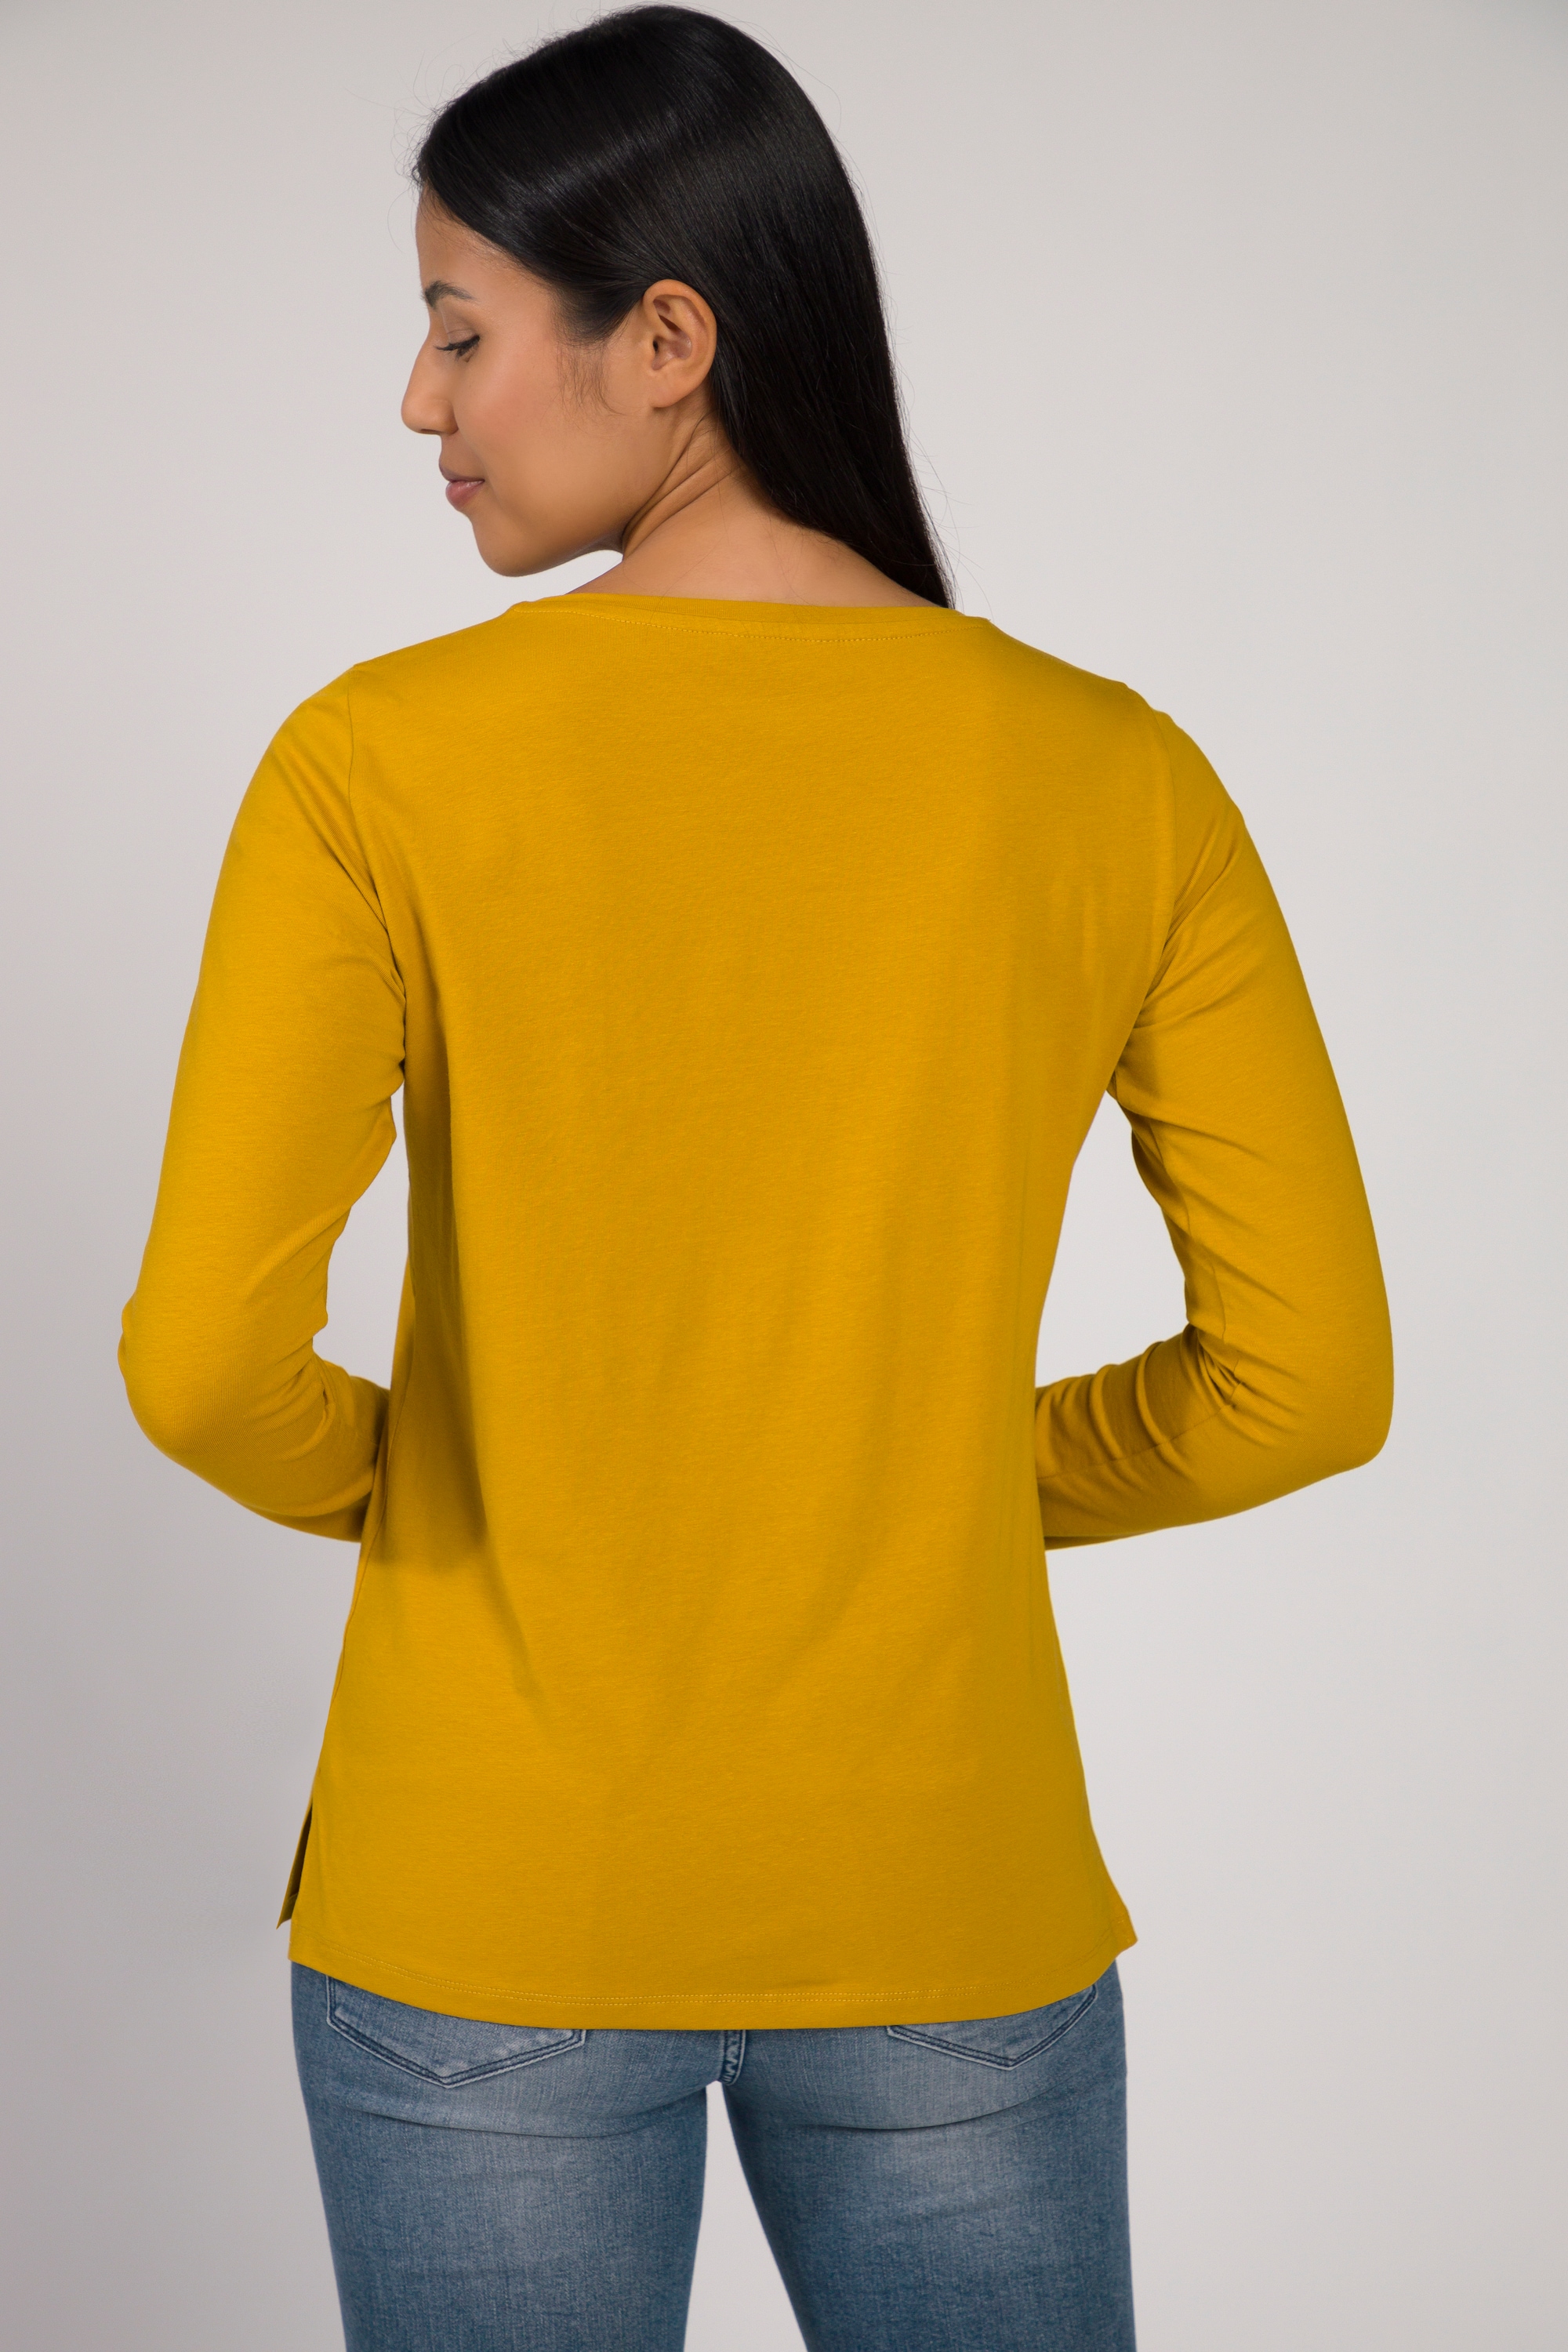 Gina Laura Damen Langarm Shirt Rundhals Seitenschlitze Jersey Qualität 812367